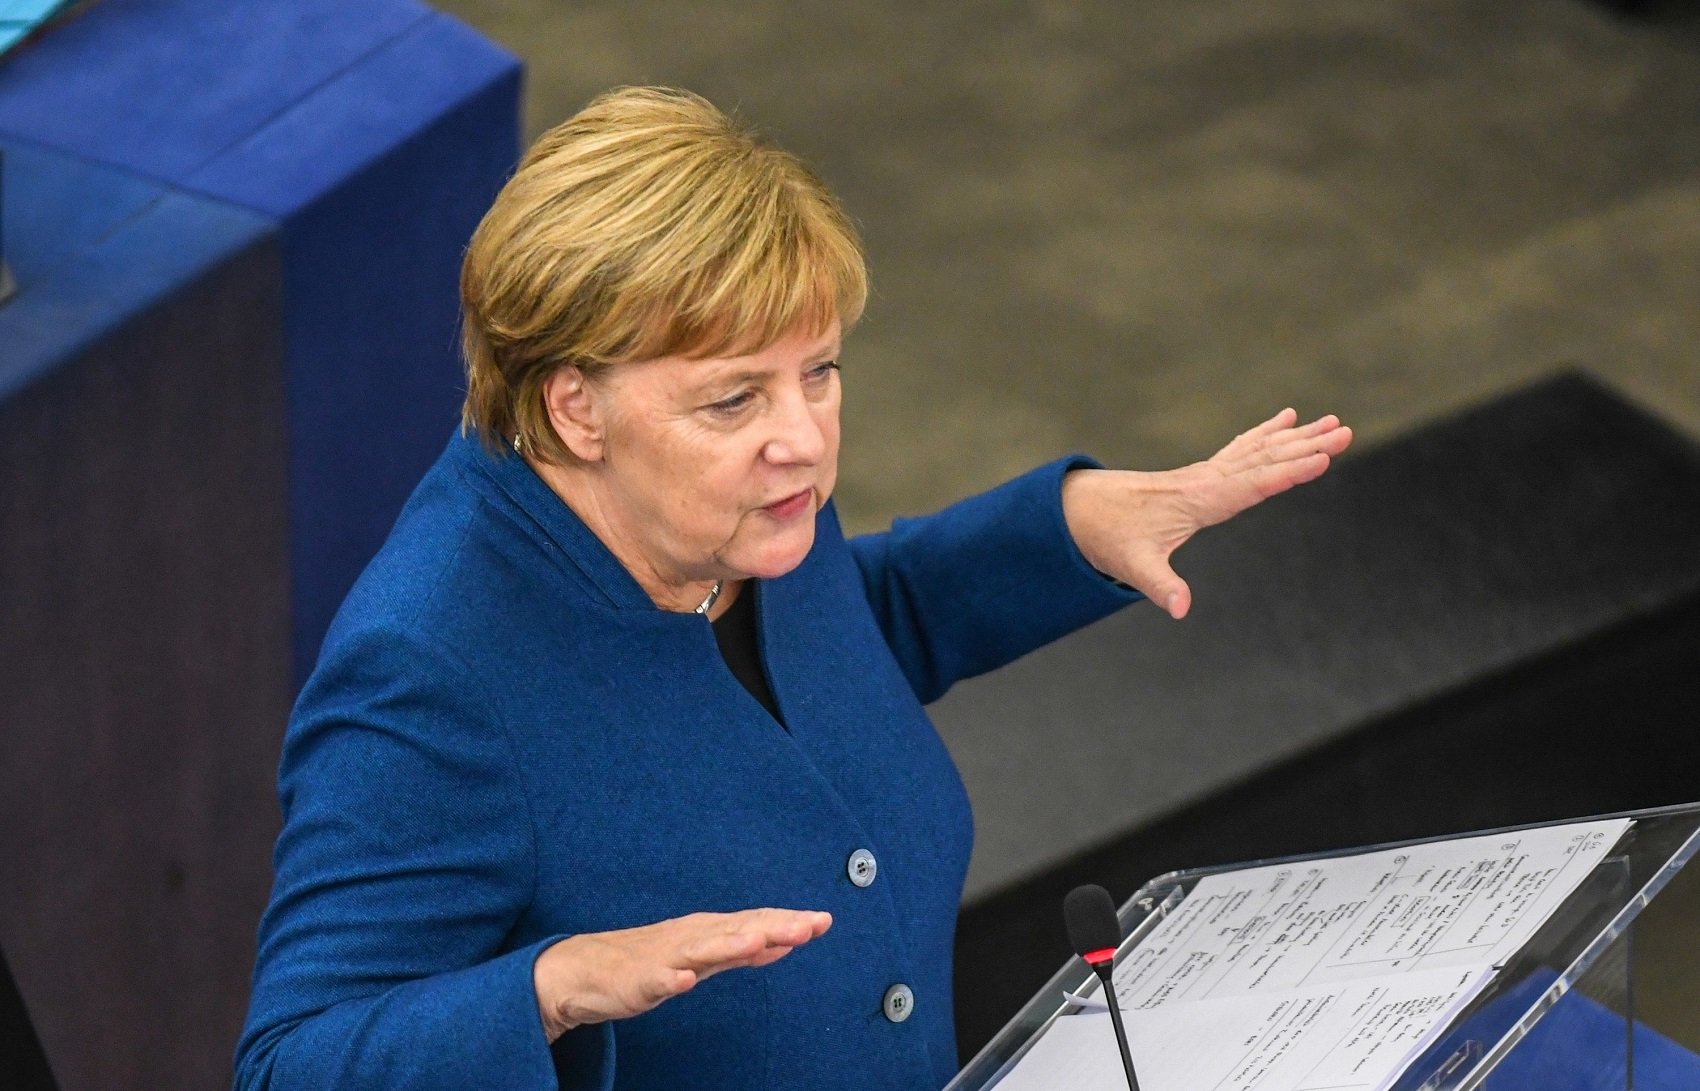 Centenars de polítics hackejats a Alemanya, inclosa Angela Merkel